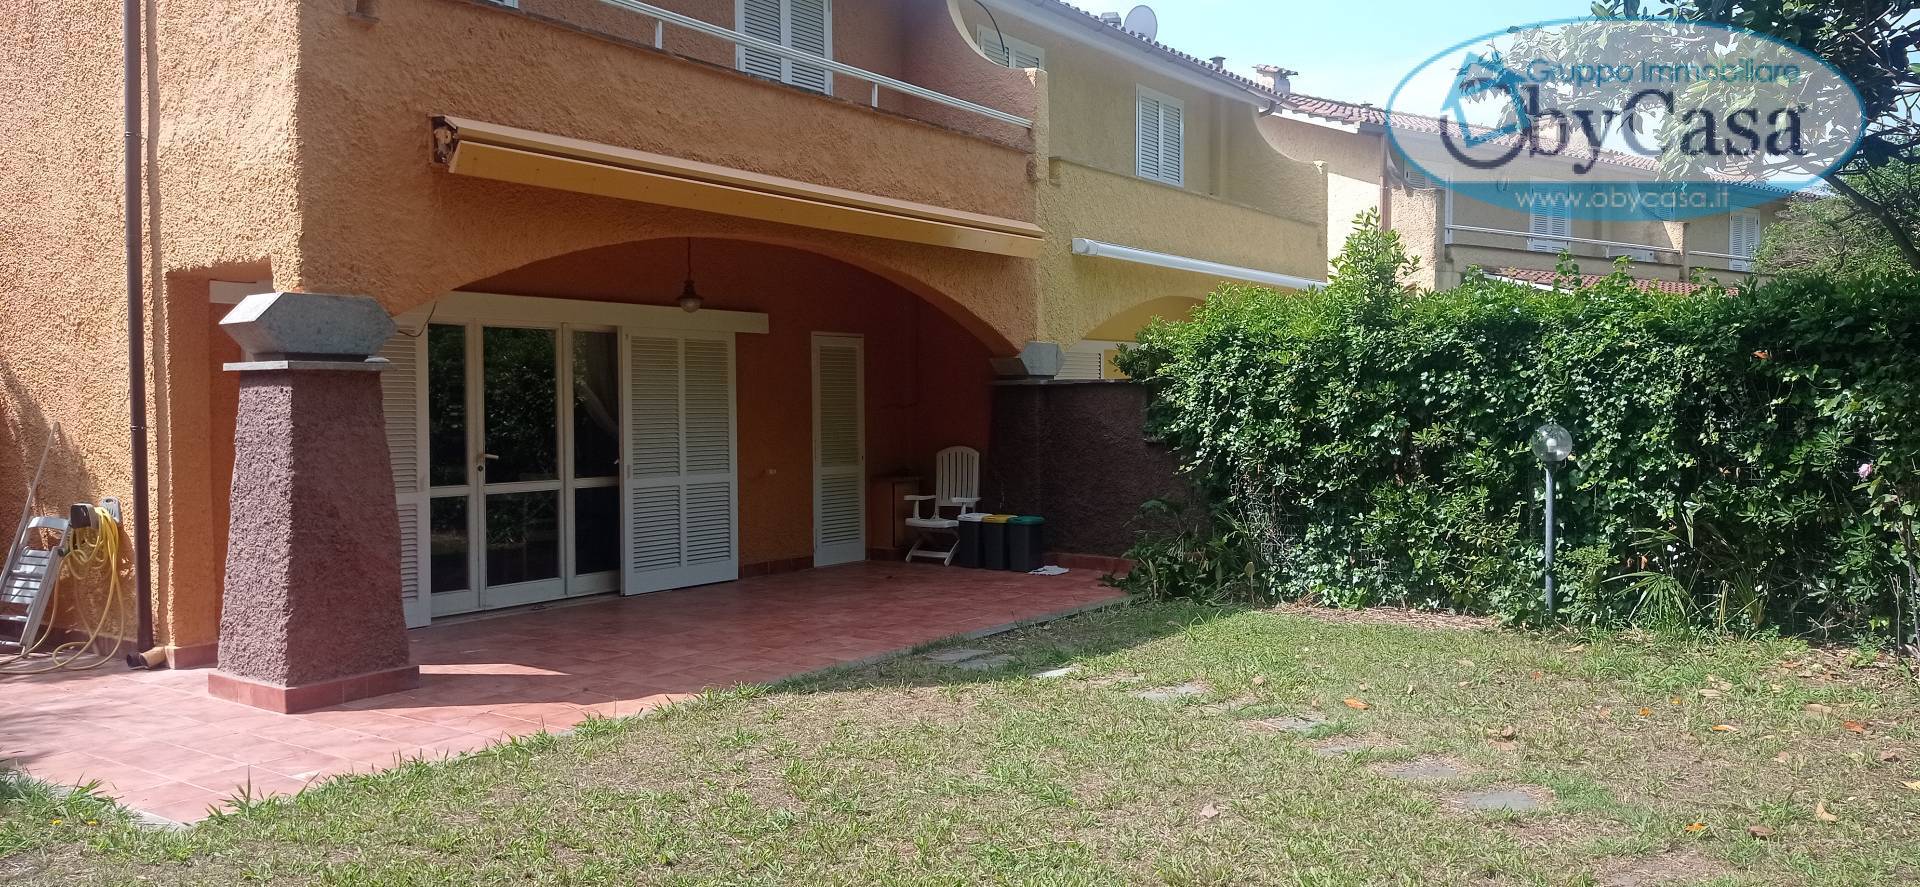 Villa a Schiera in affitto a Ladispoli, 3 locali, zona Località: MarinaSanNicola, prezzo € 4.500 | CambioCasa.it